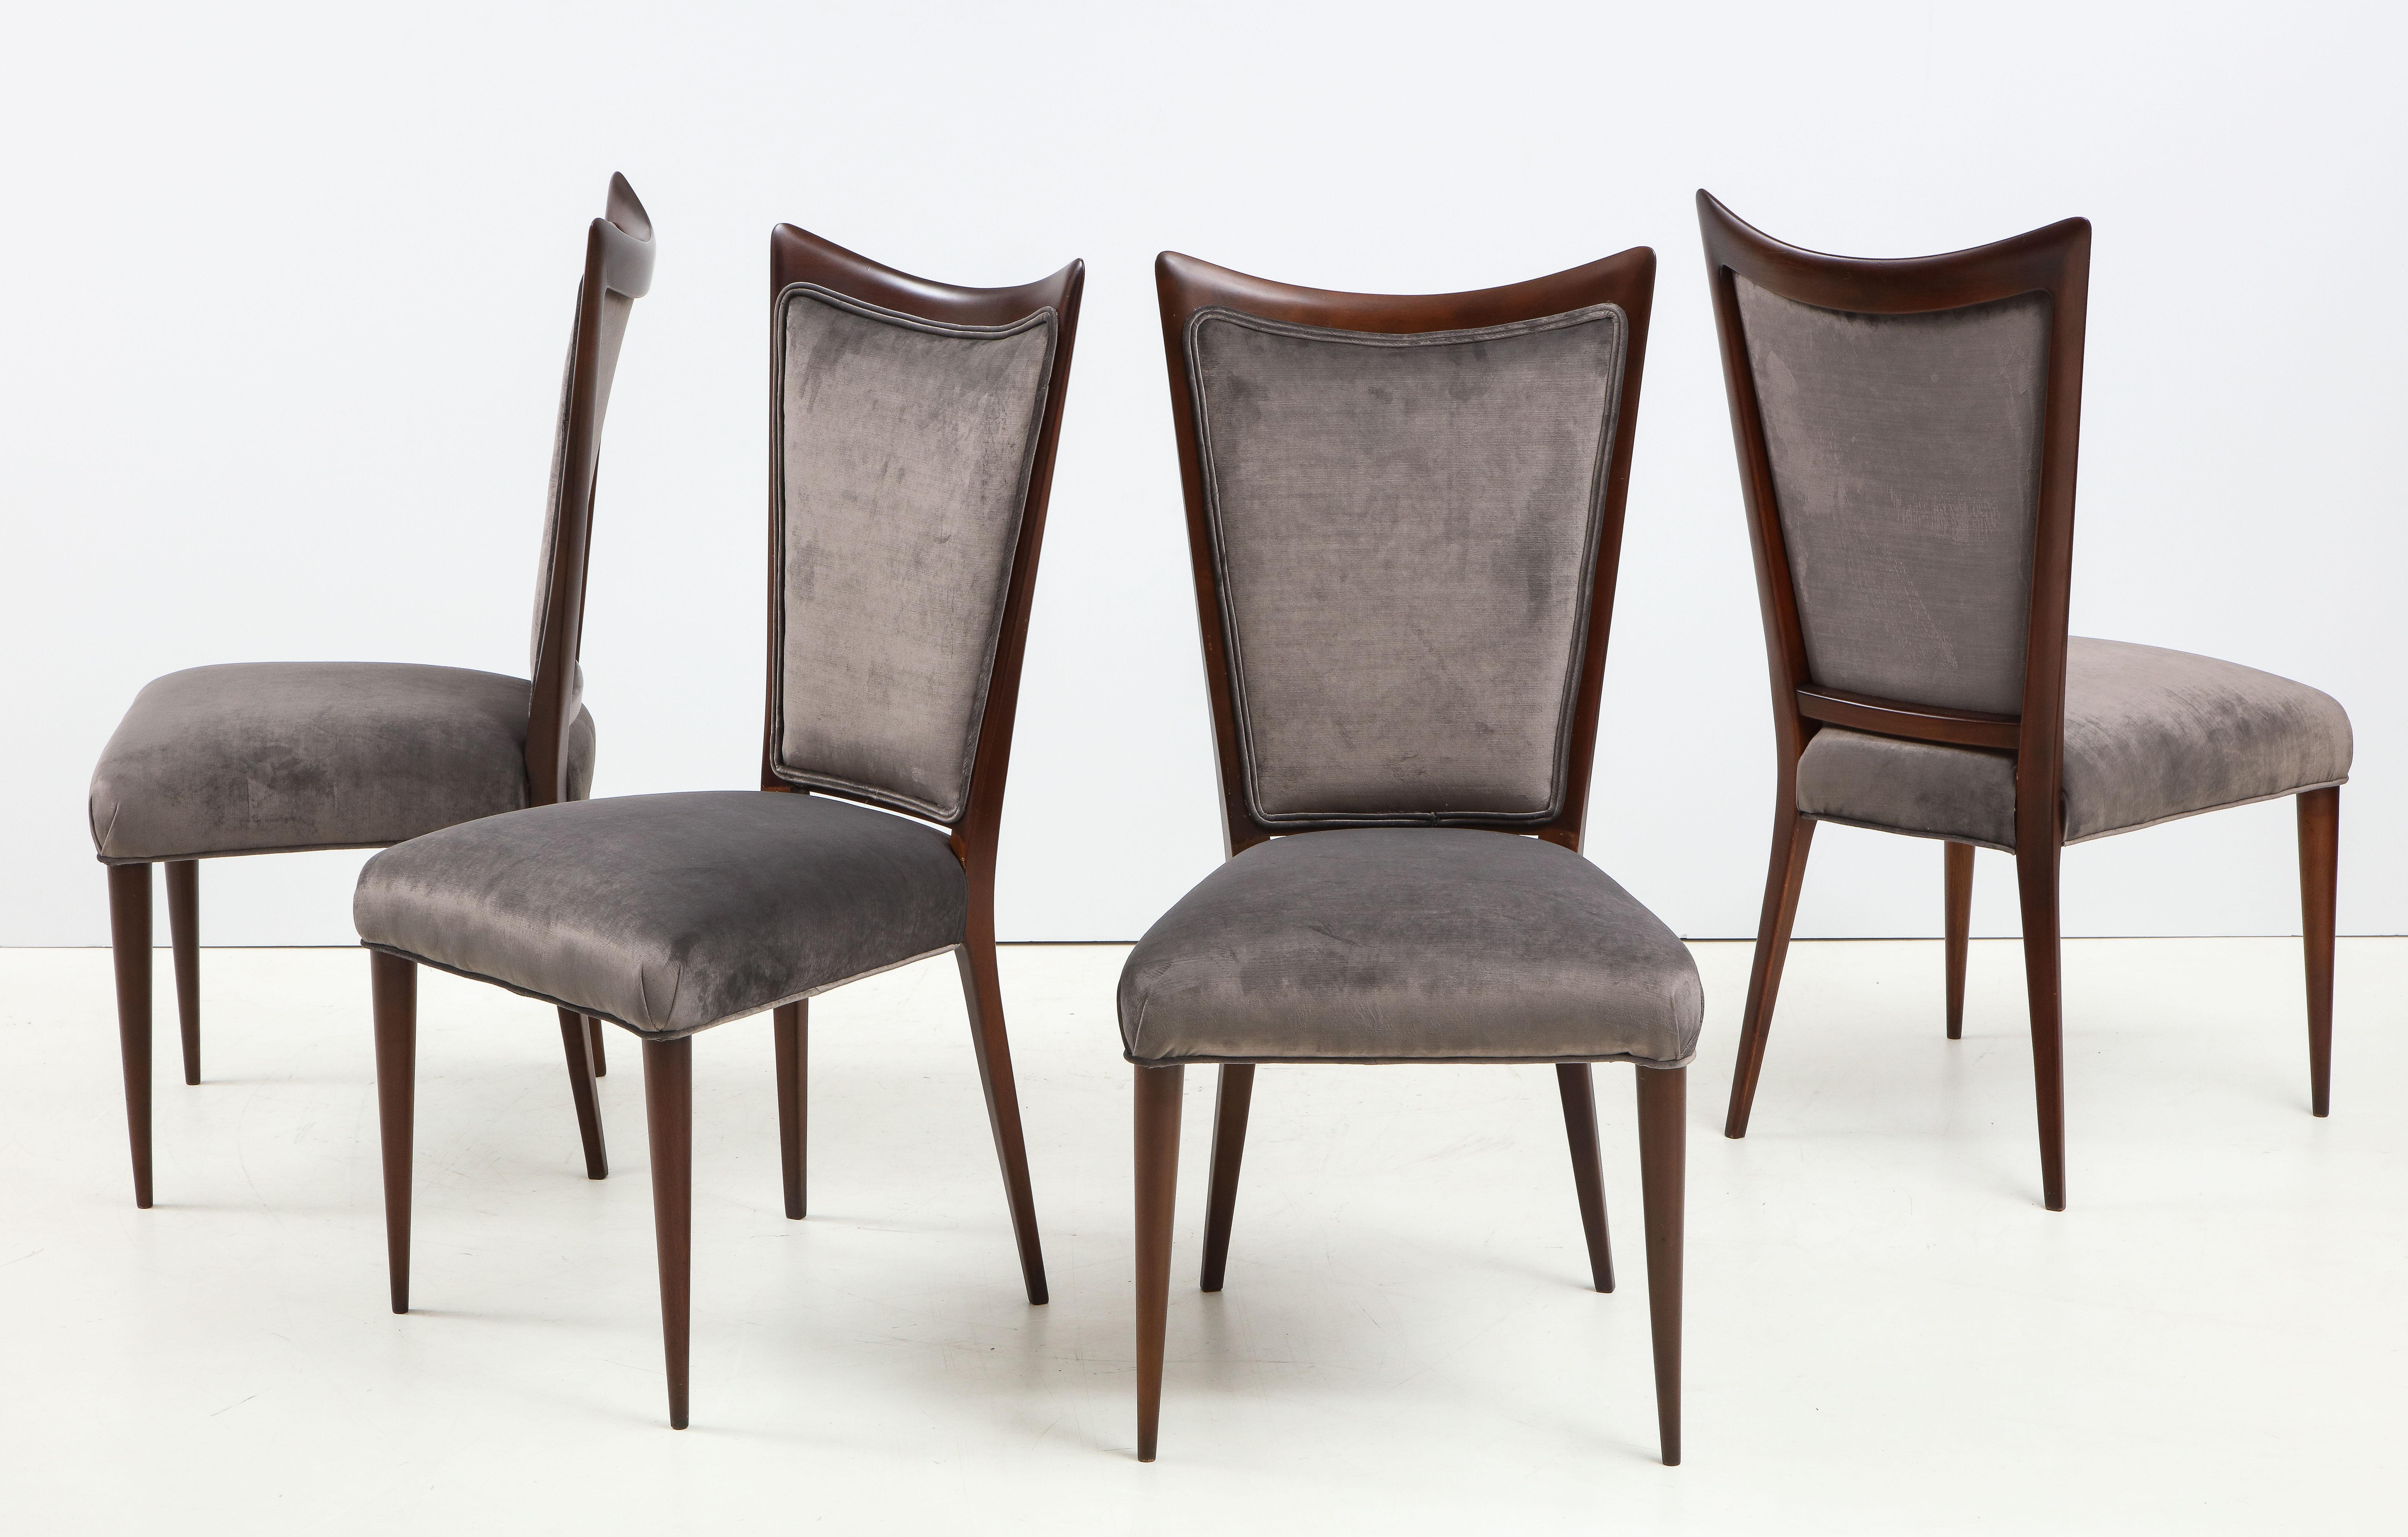 Superbe ensemble de 4 chaises de salle à manger italiennes modernistes des années 1960 en noyer, nouvellement rembourrées en velours dans le style de Gio Ponti.